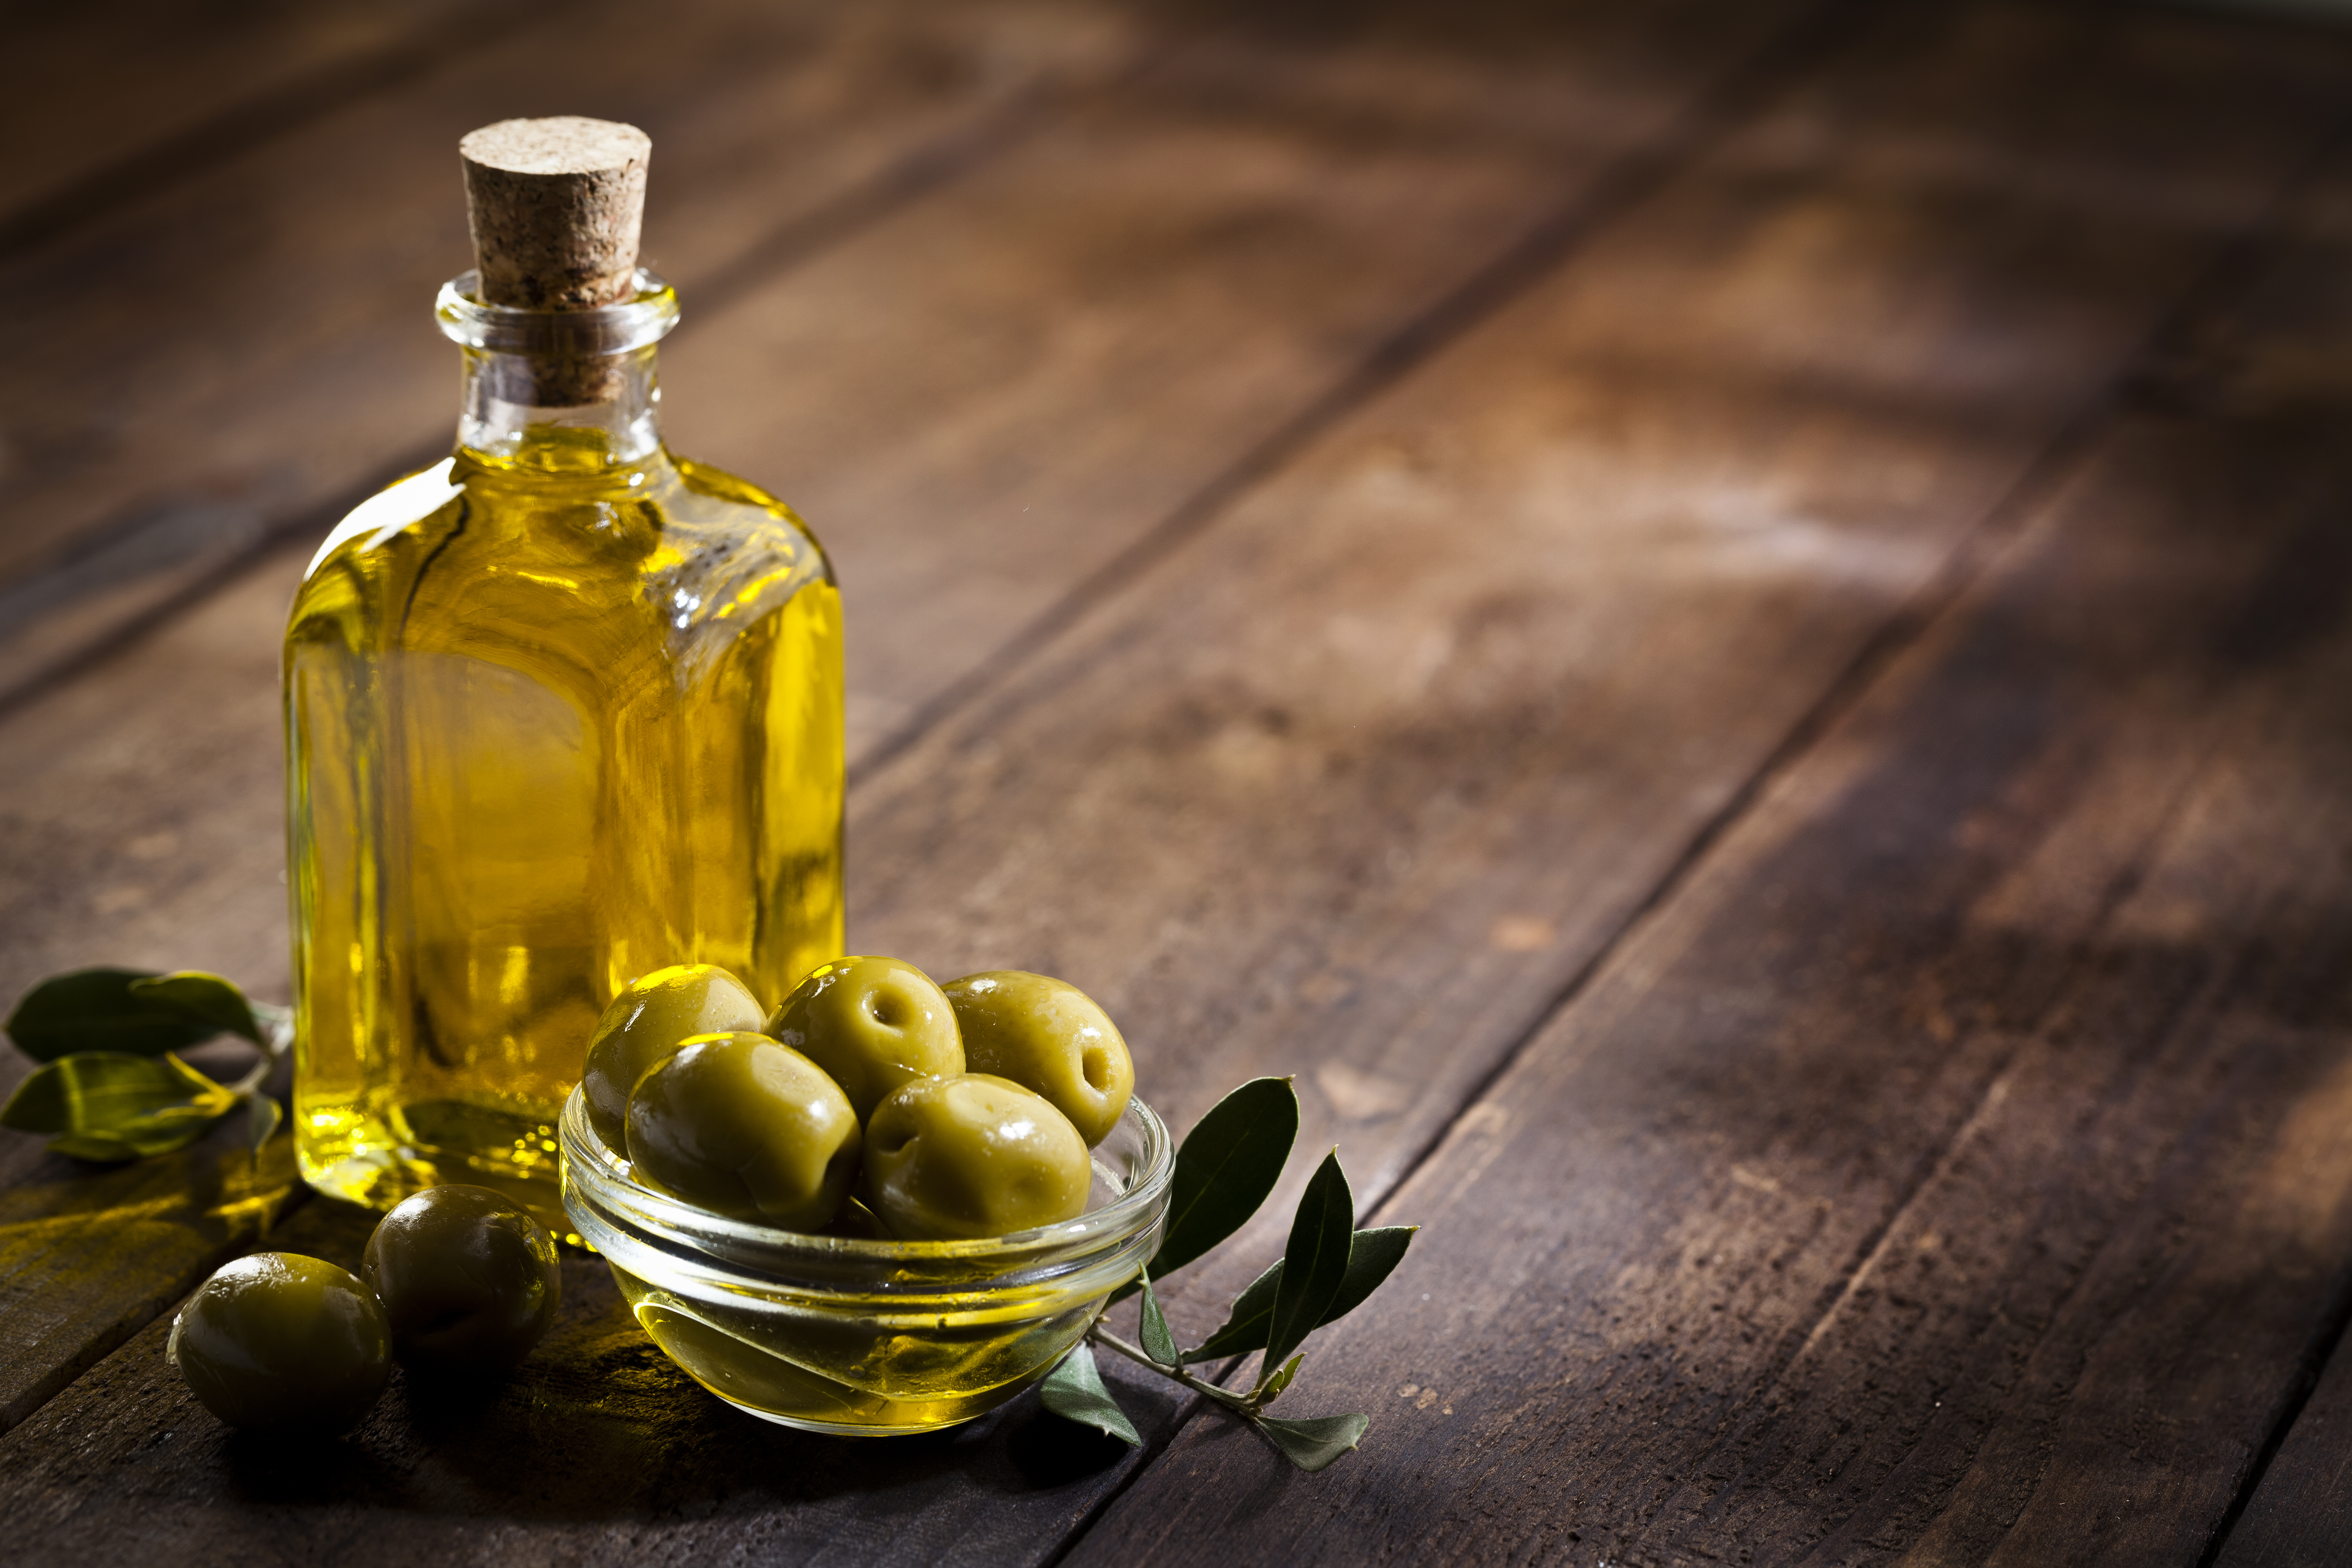 Olive Oil Pourer